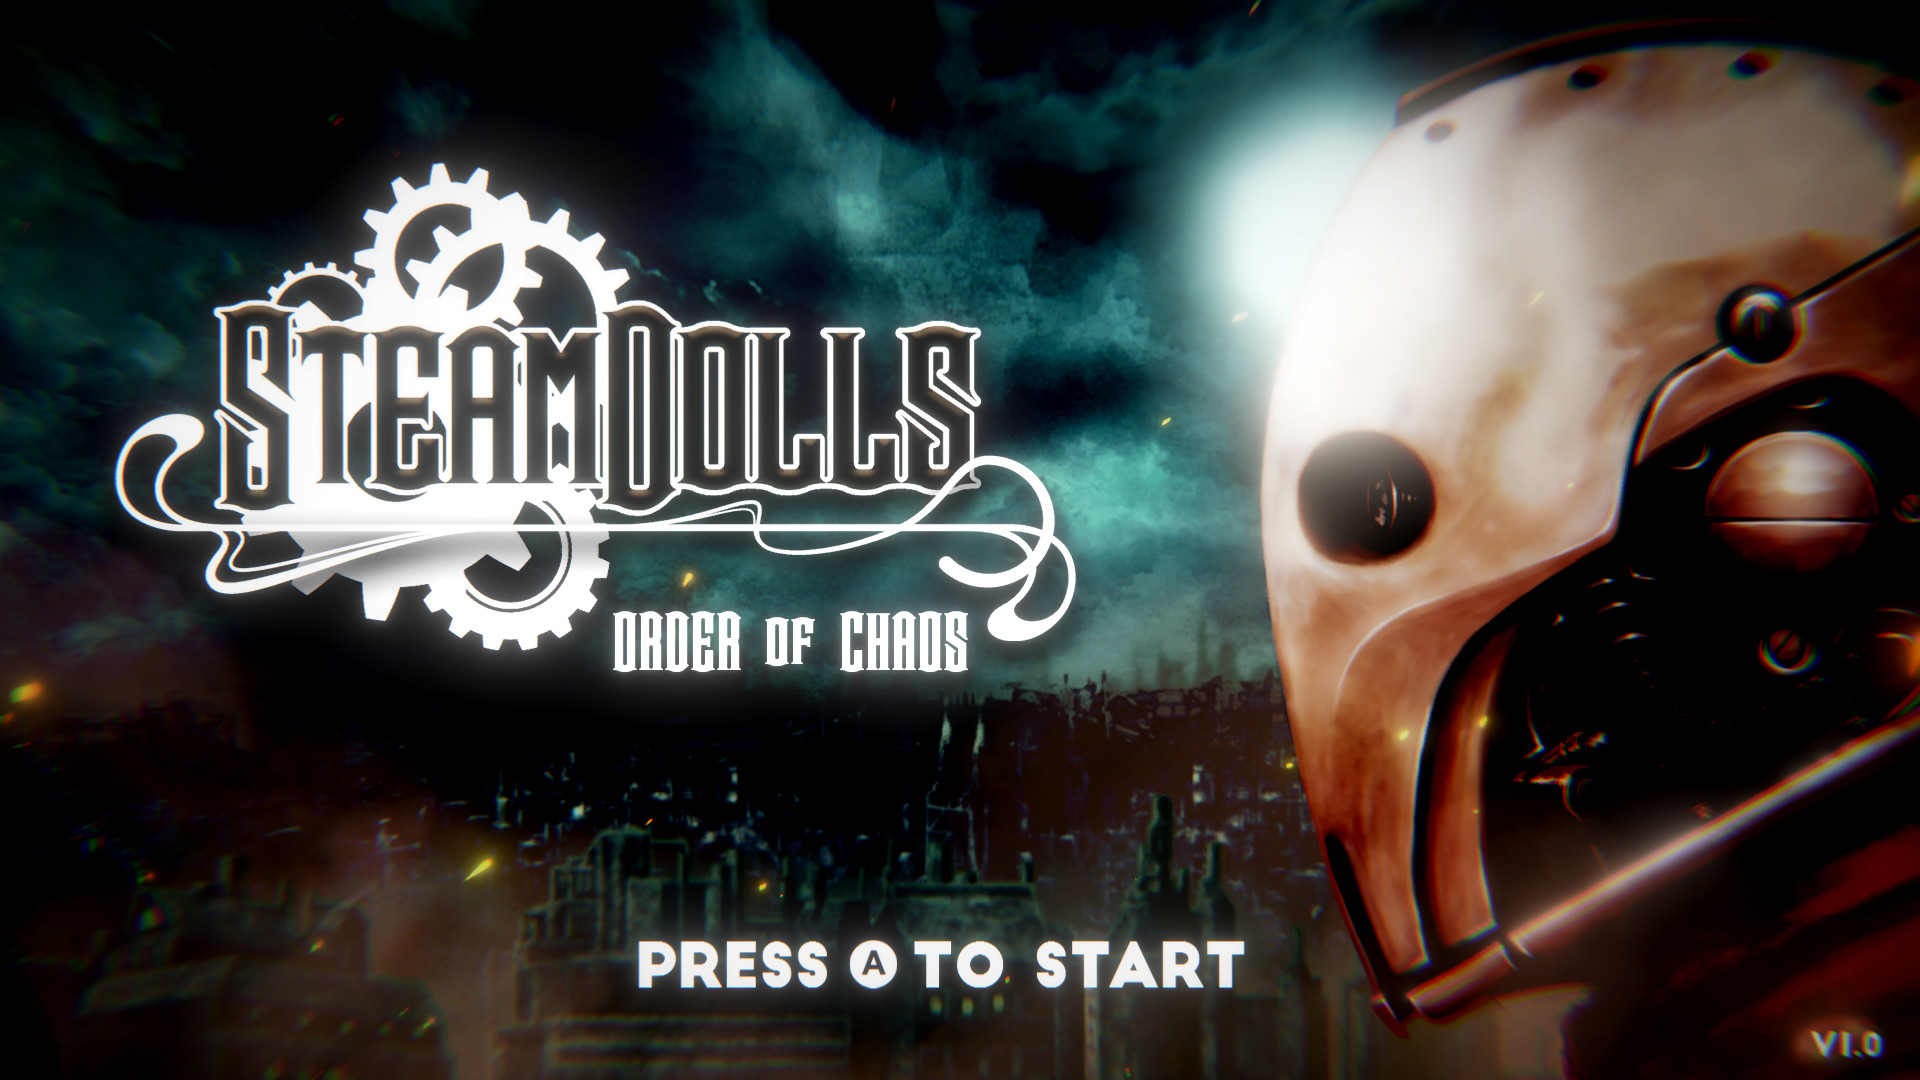 SteamDolls - Order Of Chaos : OST Featured Screenshot #1